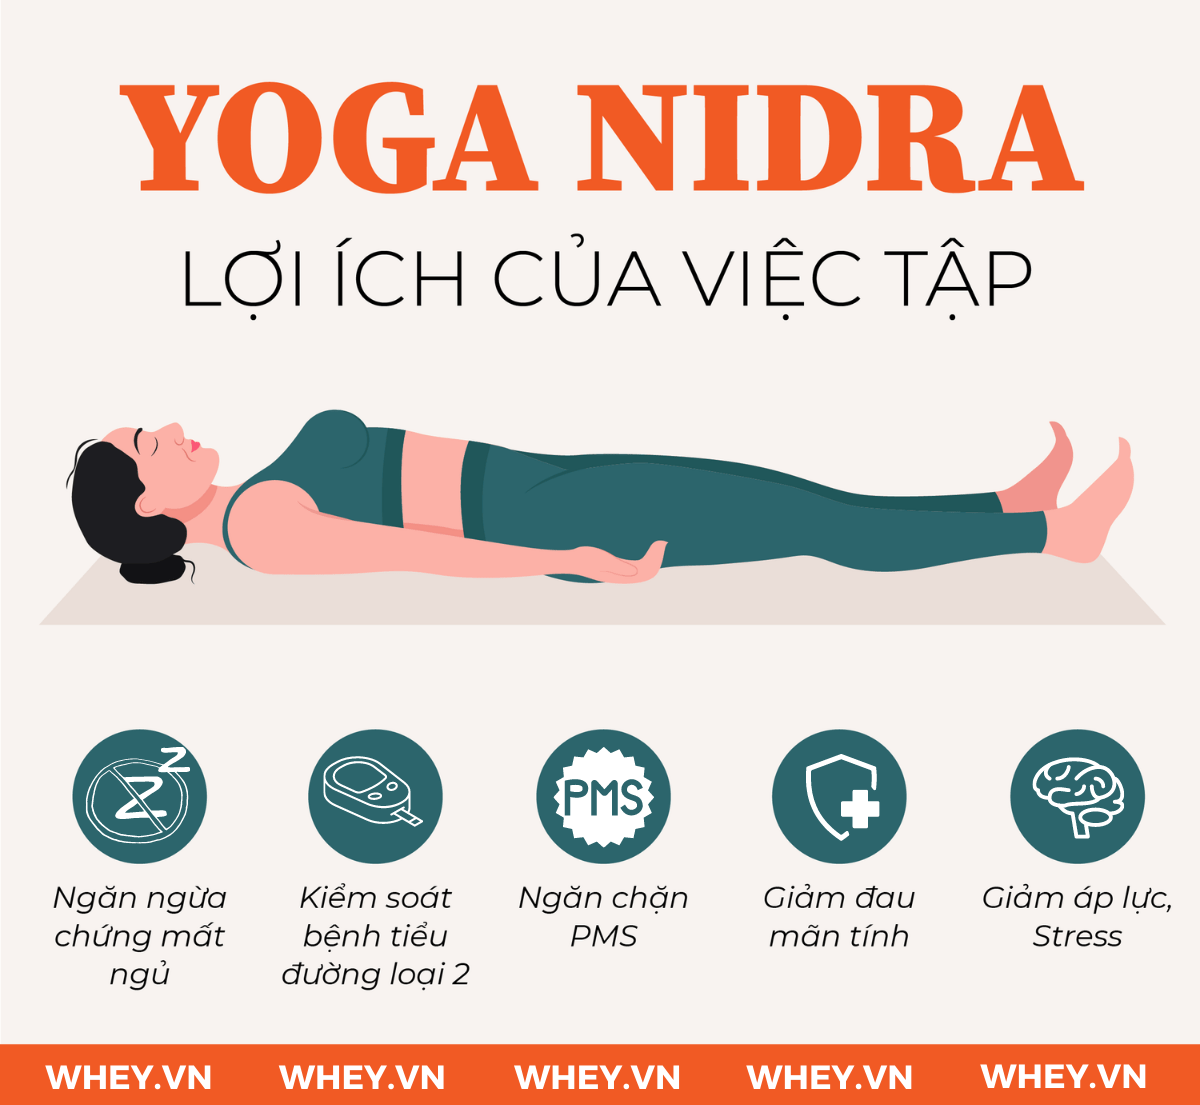  Thực hành Yoga Nidra để chữa lành tâm trí và cơ thể  giúp  thư giãn và trẻ hóa -một cách tự nhiên, tìm hiểu chi tiết hơn qua bài viết dưới đây của Wheyshop nhé!